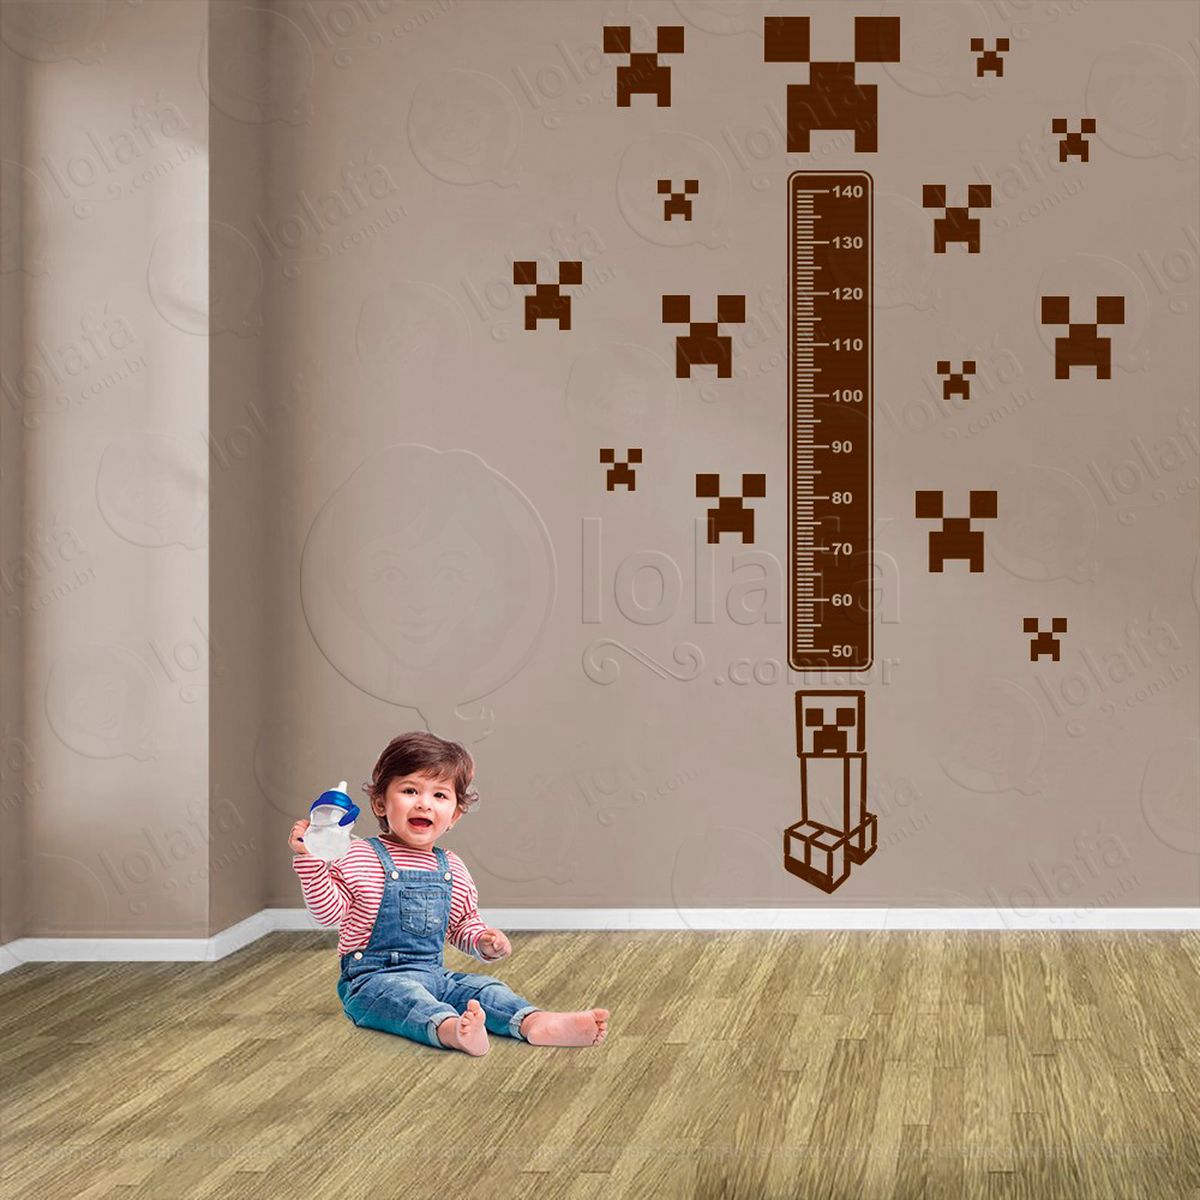 minecraft e minecraft adesivo régua de crescimento infantil, medidor de altura para quarto, porta e parede - mod:745